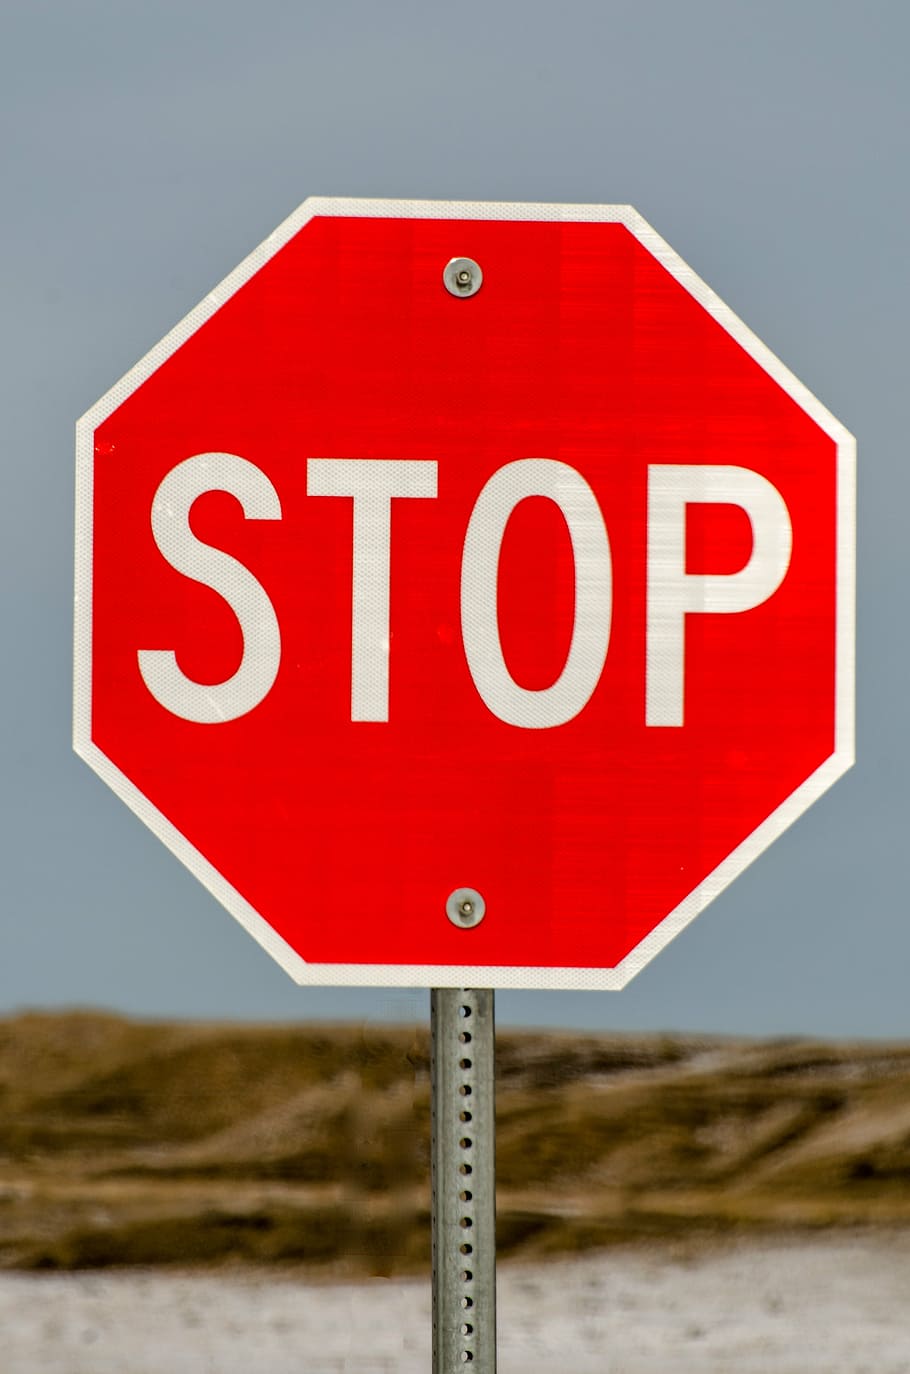 tanda berhenti, berhenti, tanda, merah, lalu lintas, jalan, peringatan, simbol, keselamatan, sinyal